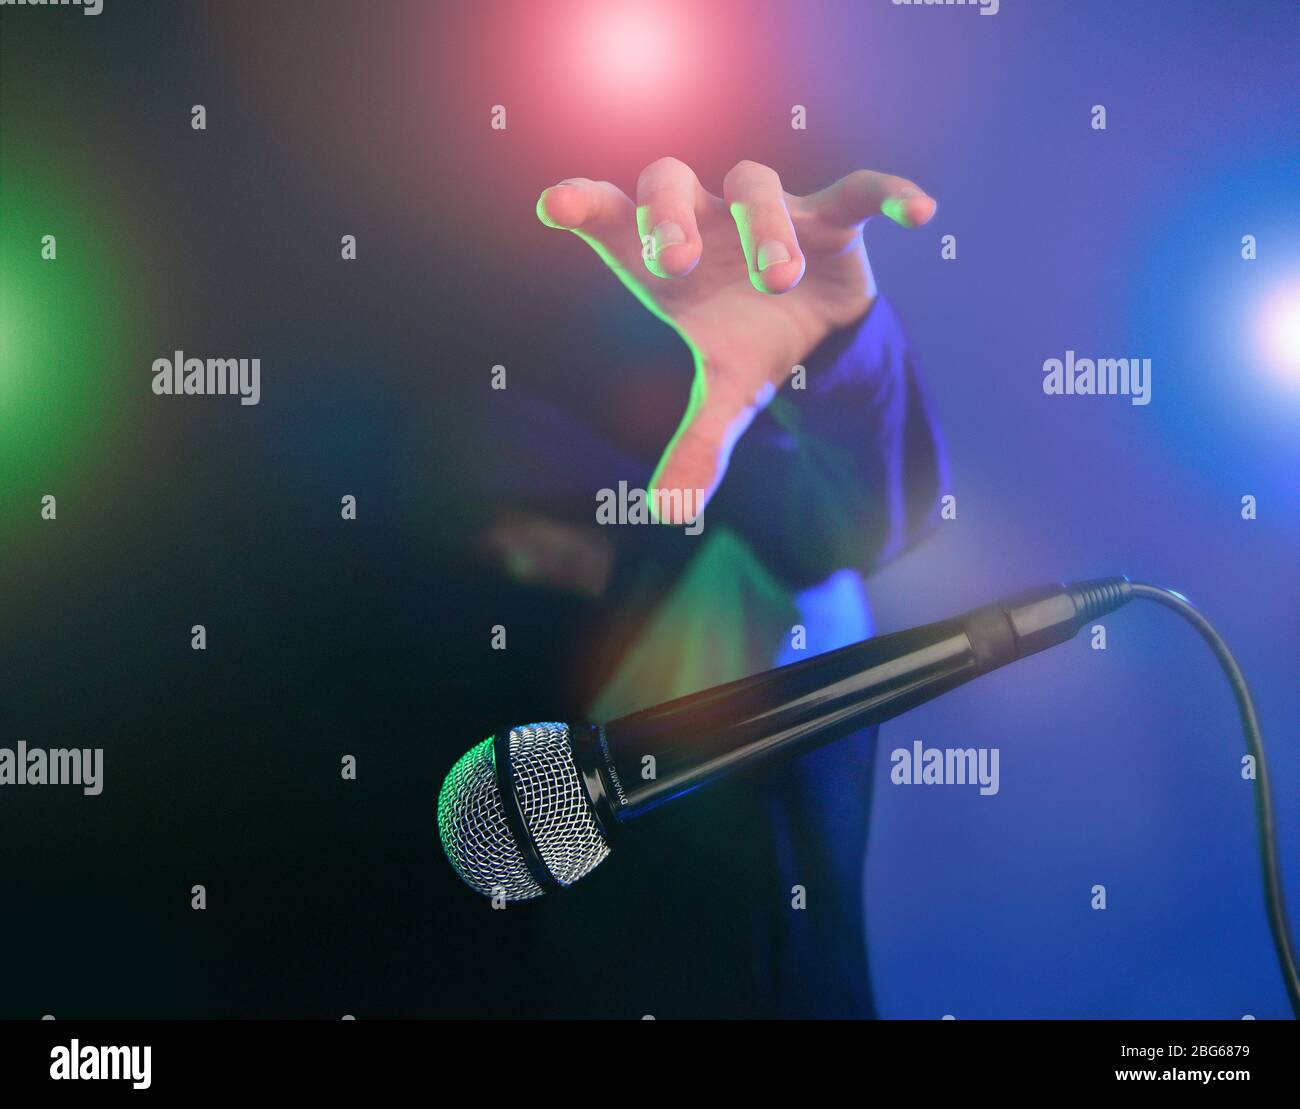 Bild des Mikrofonkonzepts ablegen. Aufgenommen mit Bühnenbeleuchtung, mehrfarbigem Effekt und coolem Kerl mit Hoodie. Stockfoto